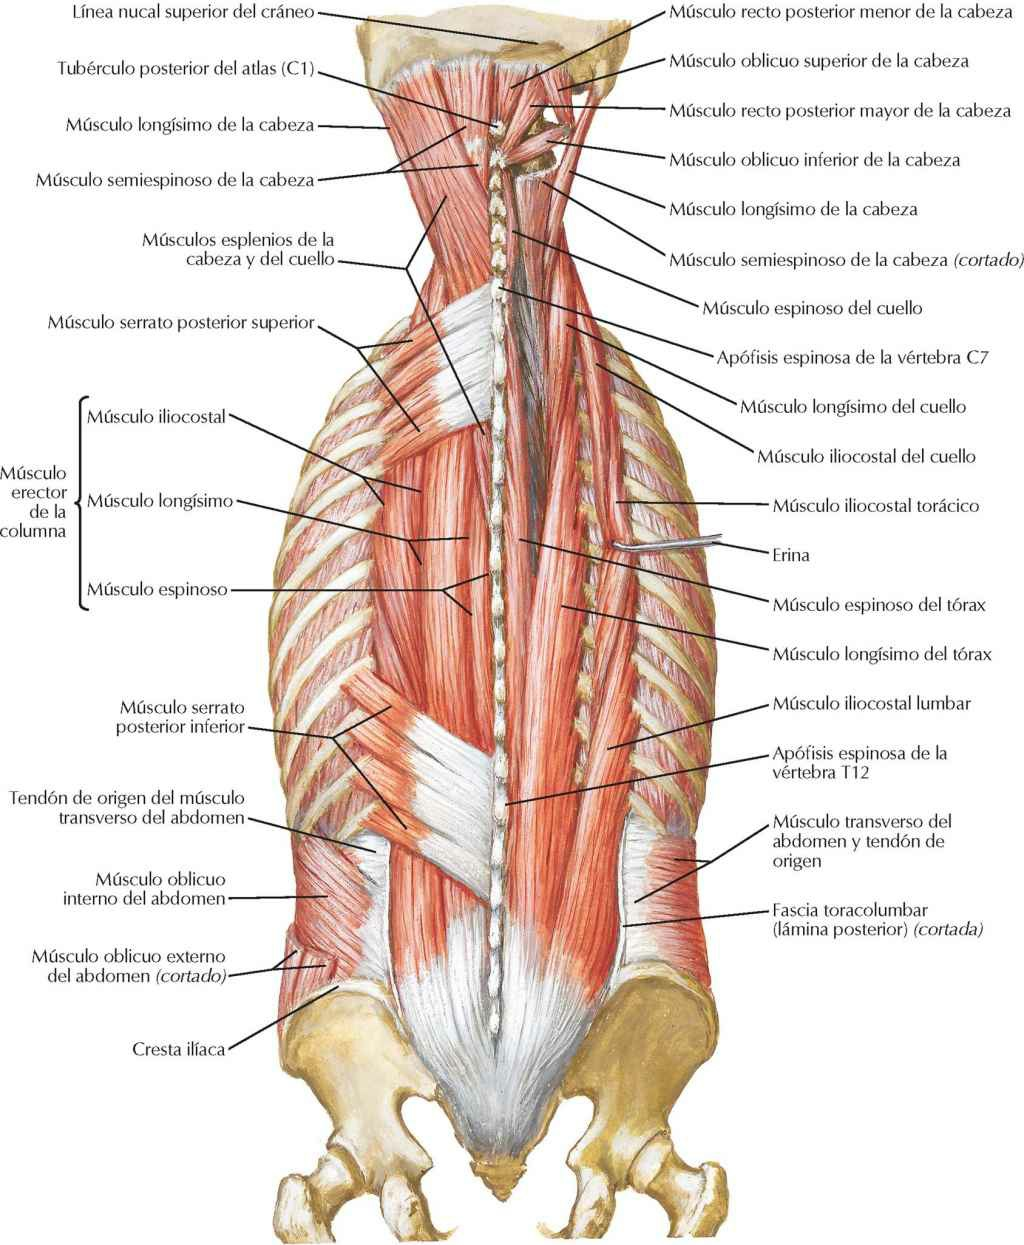 Músculos del dorso: planos intermedios